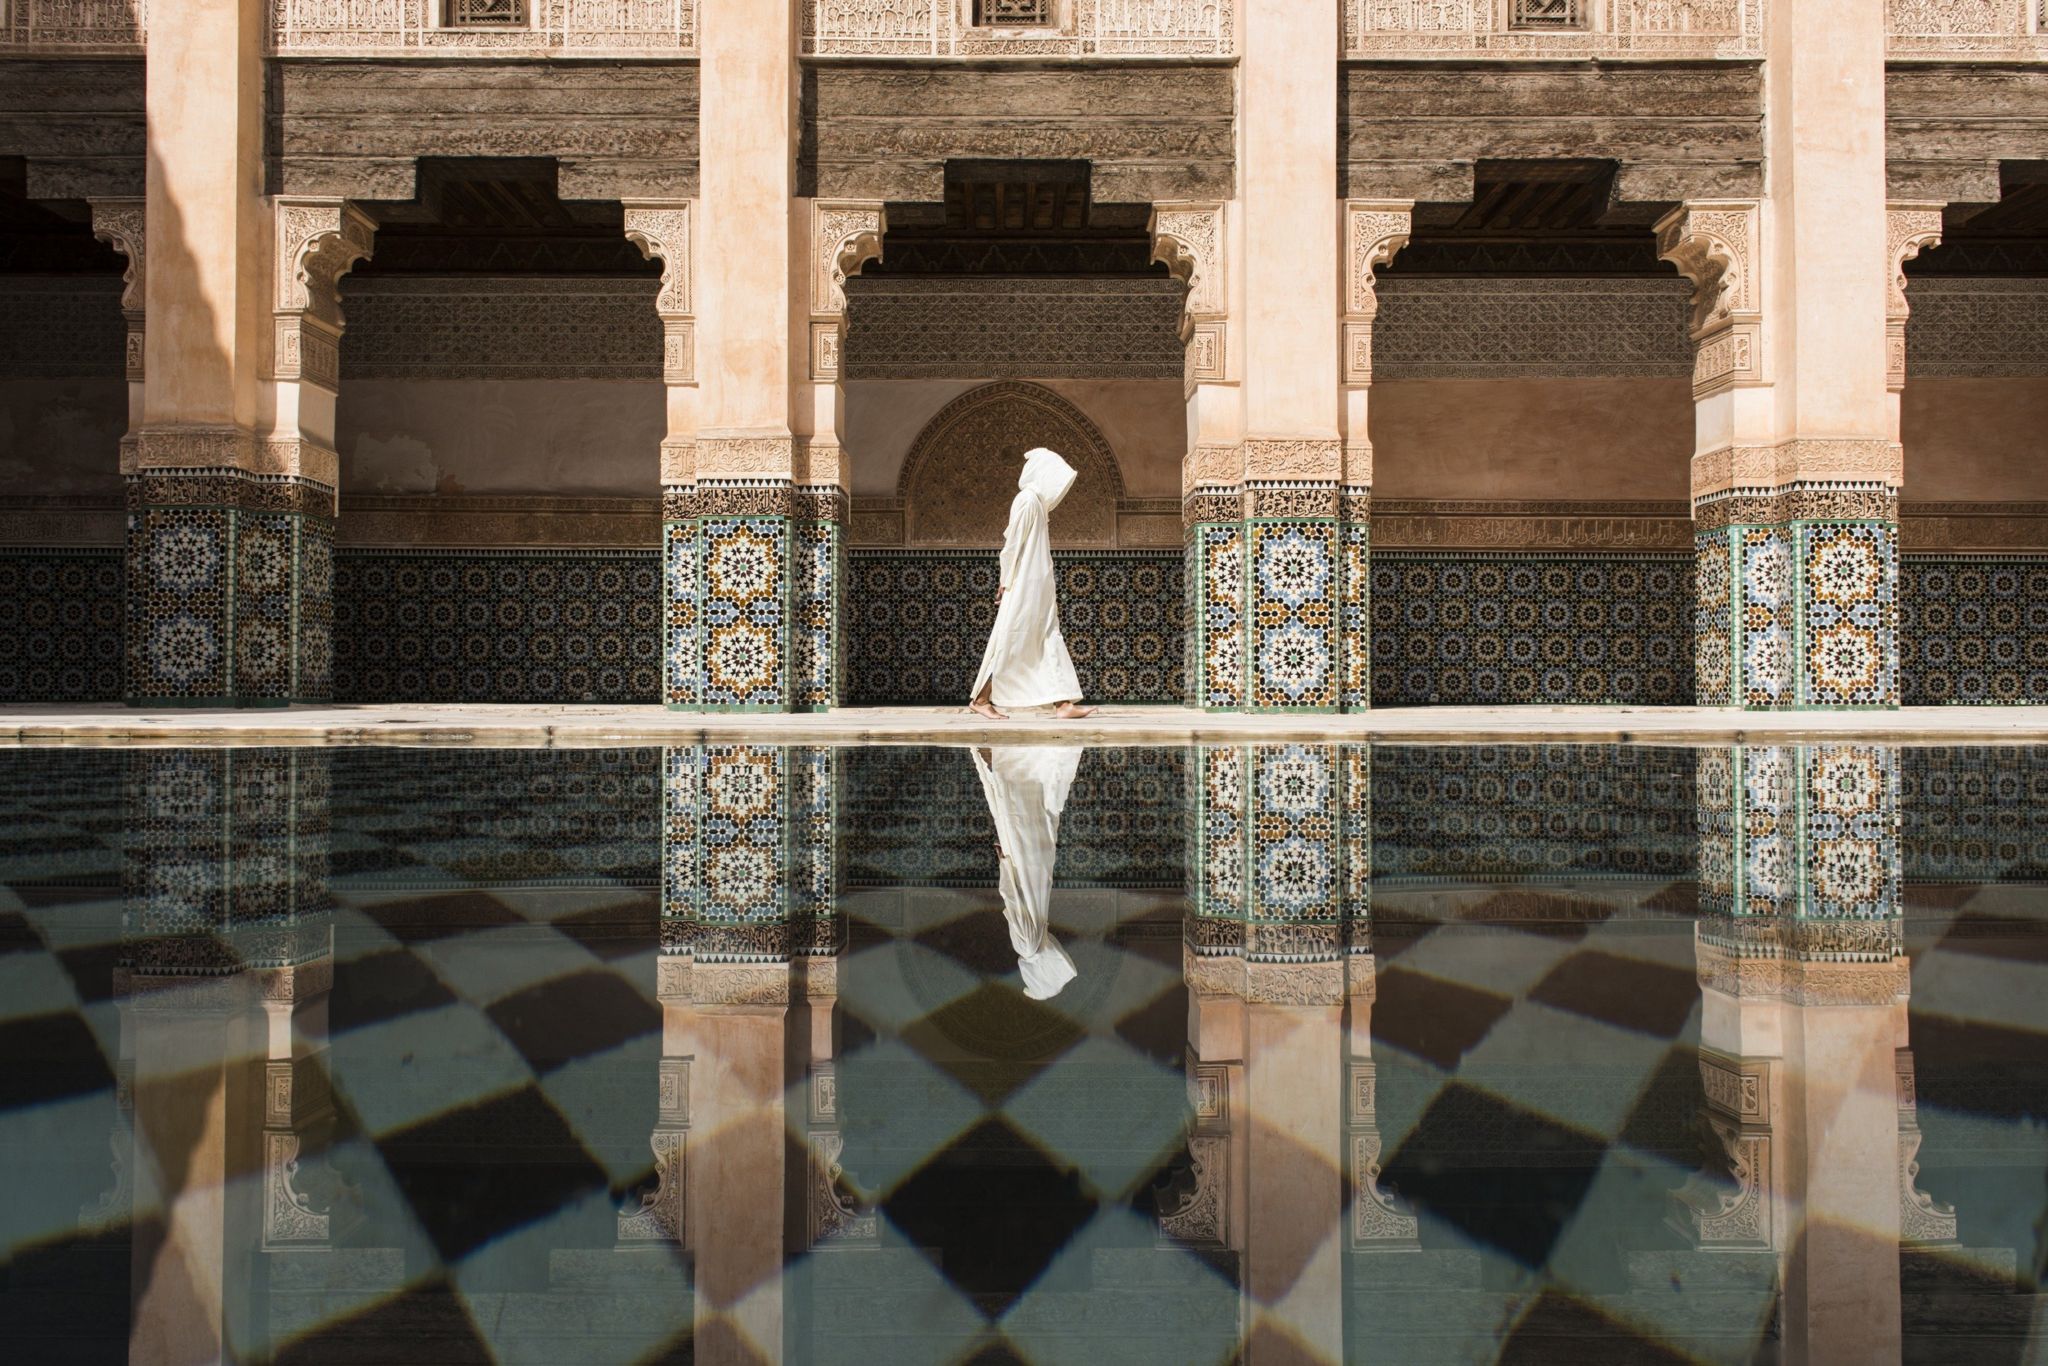 Ben Youssef madrasa in Marrakesh, Morocco.